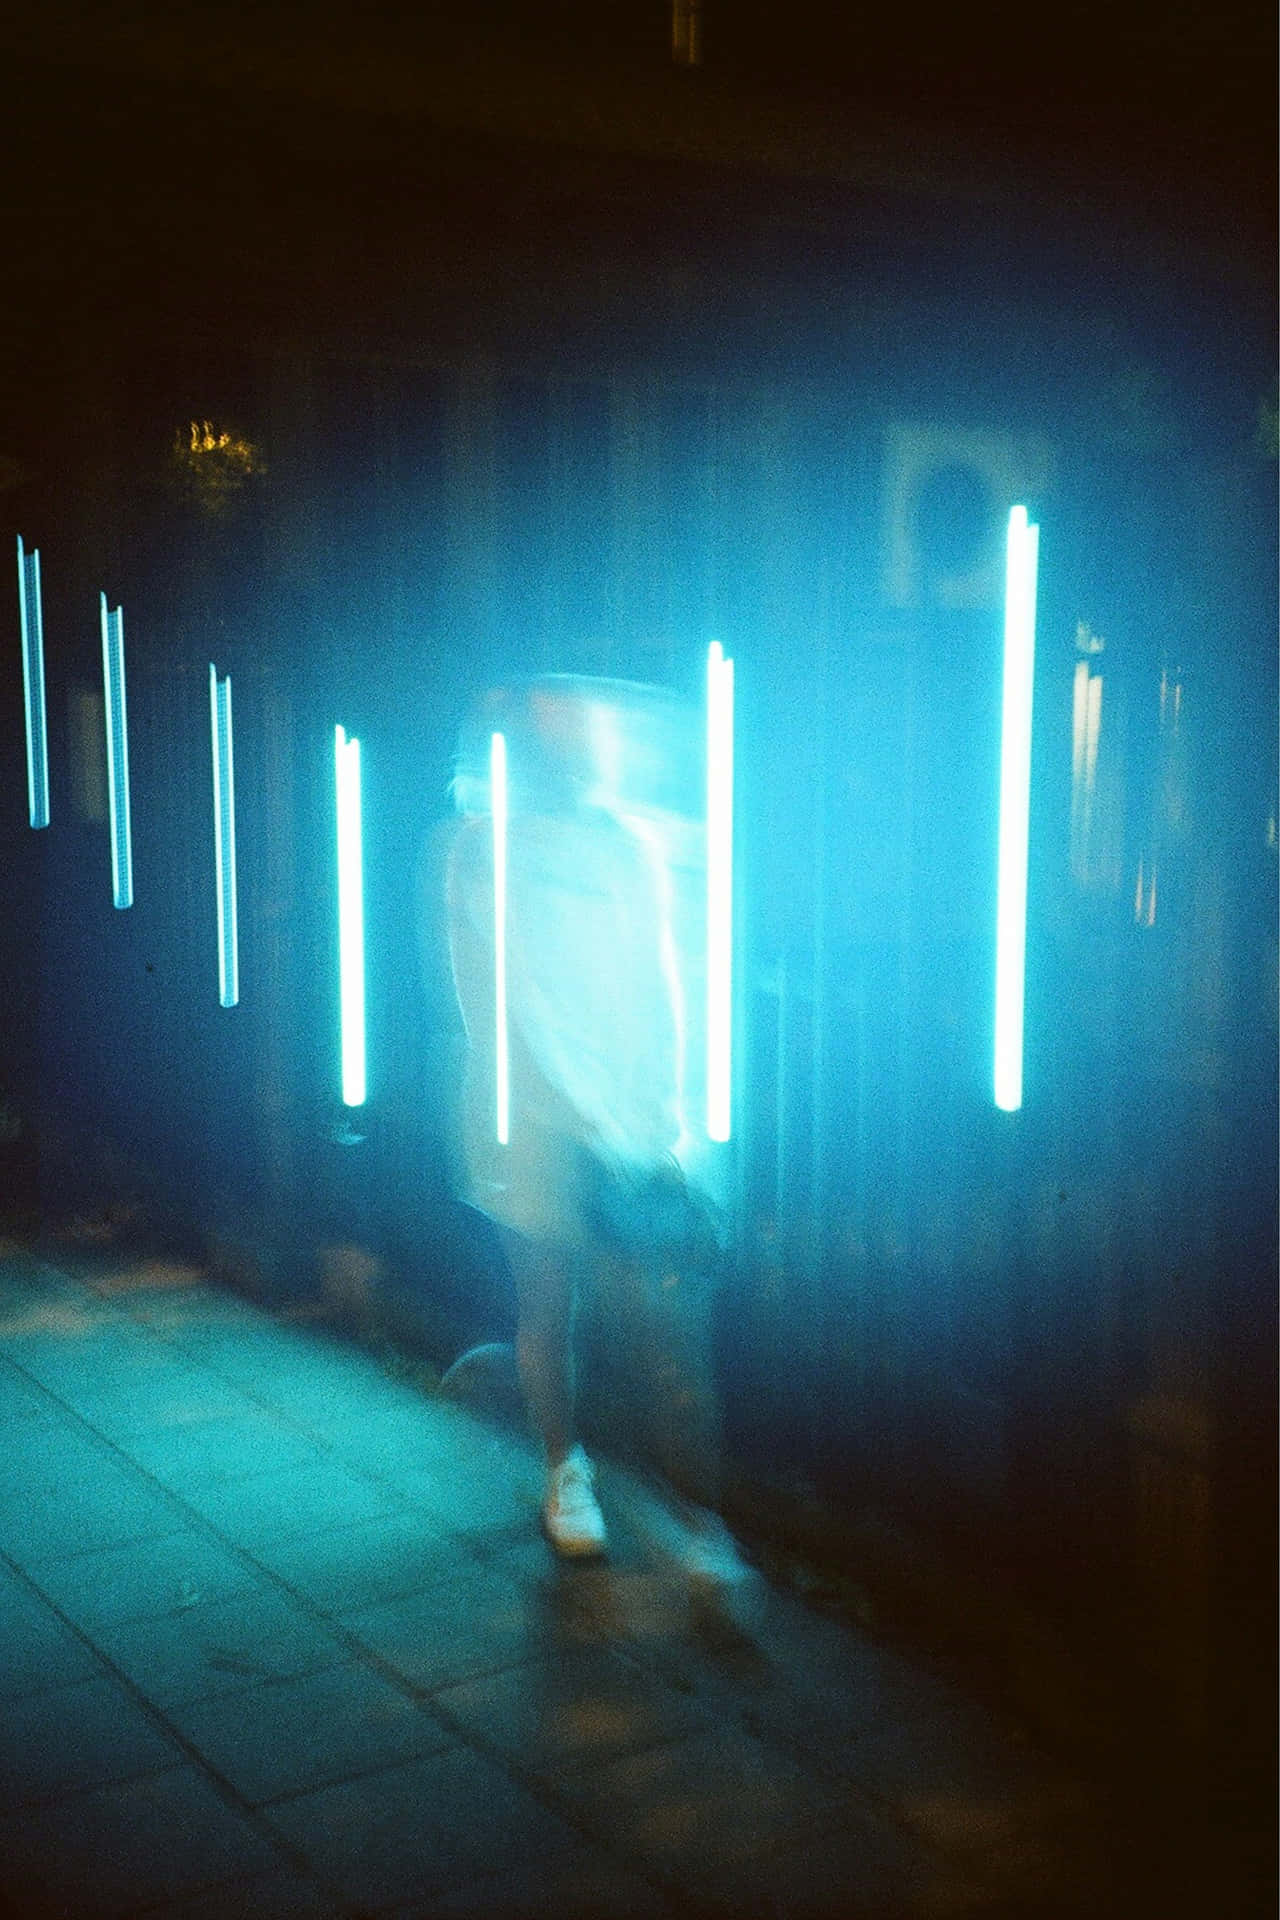 Neon Blur Grunge Aesthetic.jpg Wallpaper